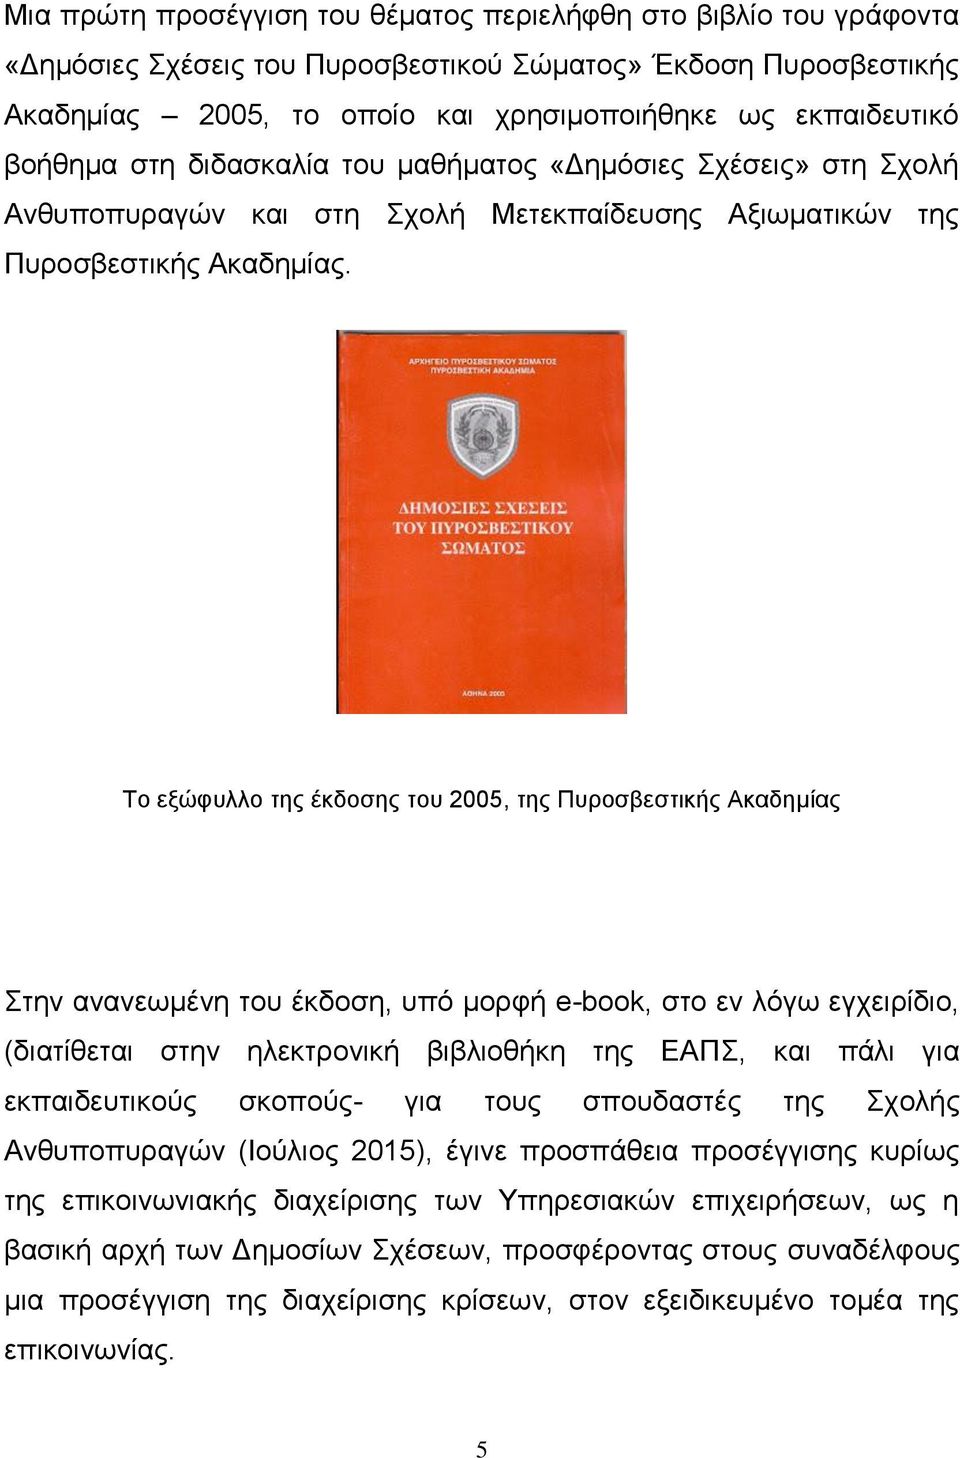 Το εξώφυλλο της έκδοσης του 2005, της Πυροσβεστικής Ακαδημίας Στην ανανεωμένη του έκδοση, υπό μορφή e-book, στο εν λόγω εγχειρίδιο, (διατίθεται στην ηλεκτρονική βιβλιοθήκη της ΕΑΠΣ, και πάλι για